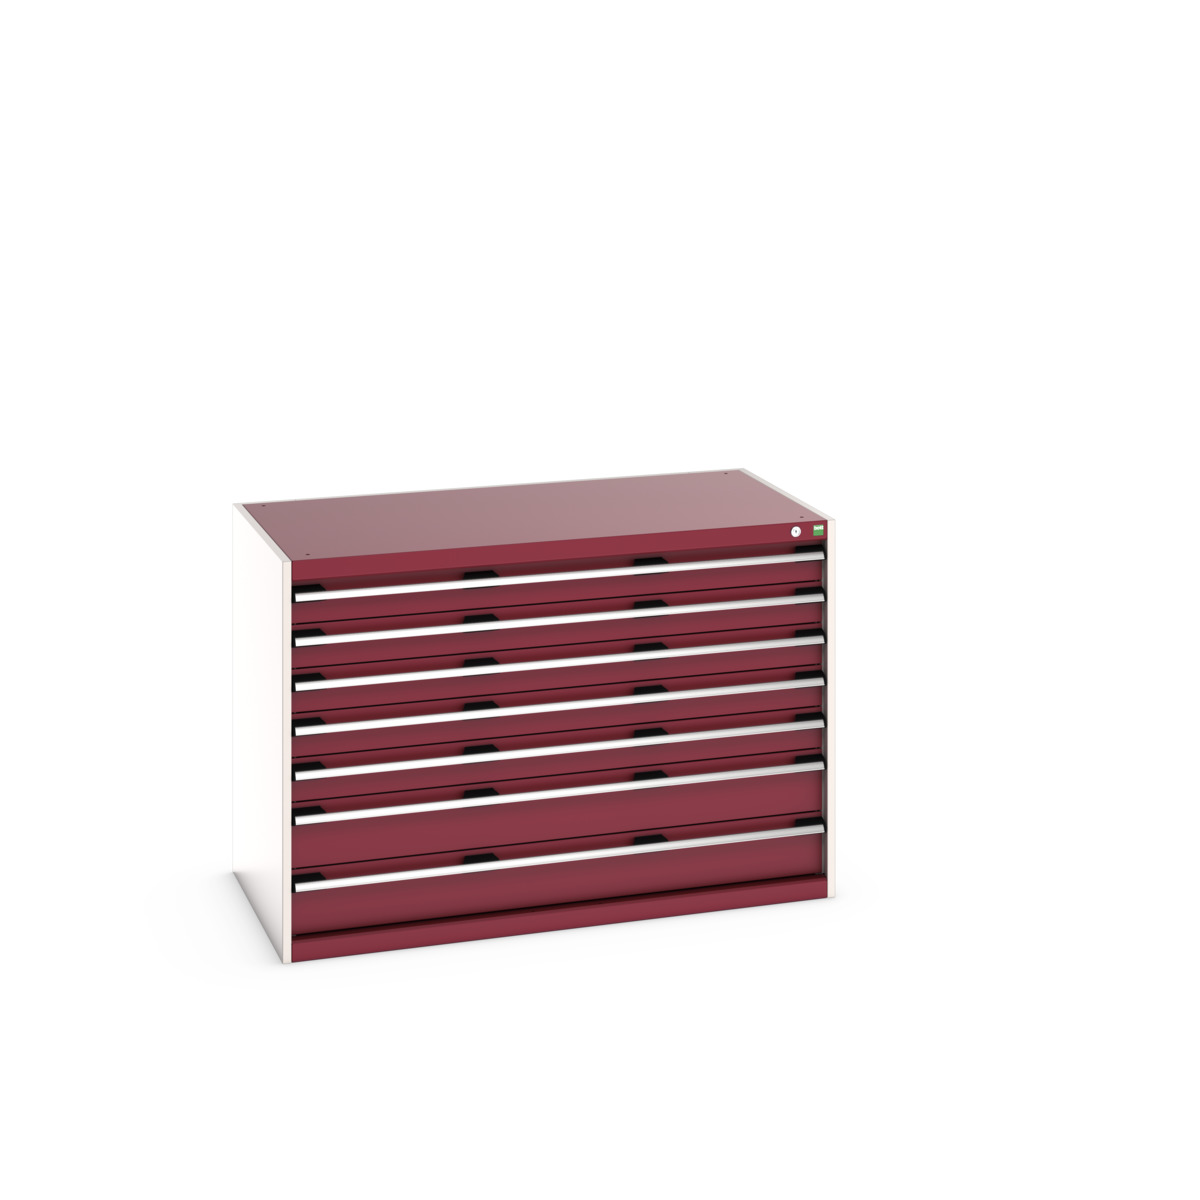 40030088.24V - cubio drawer cabinet